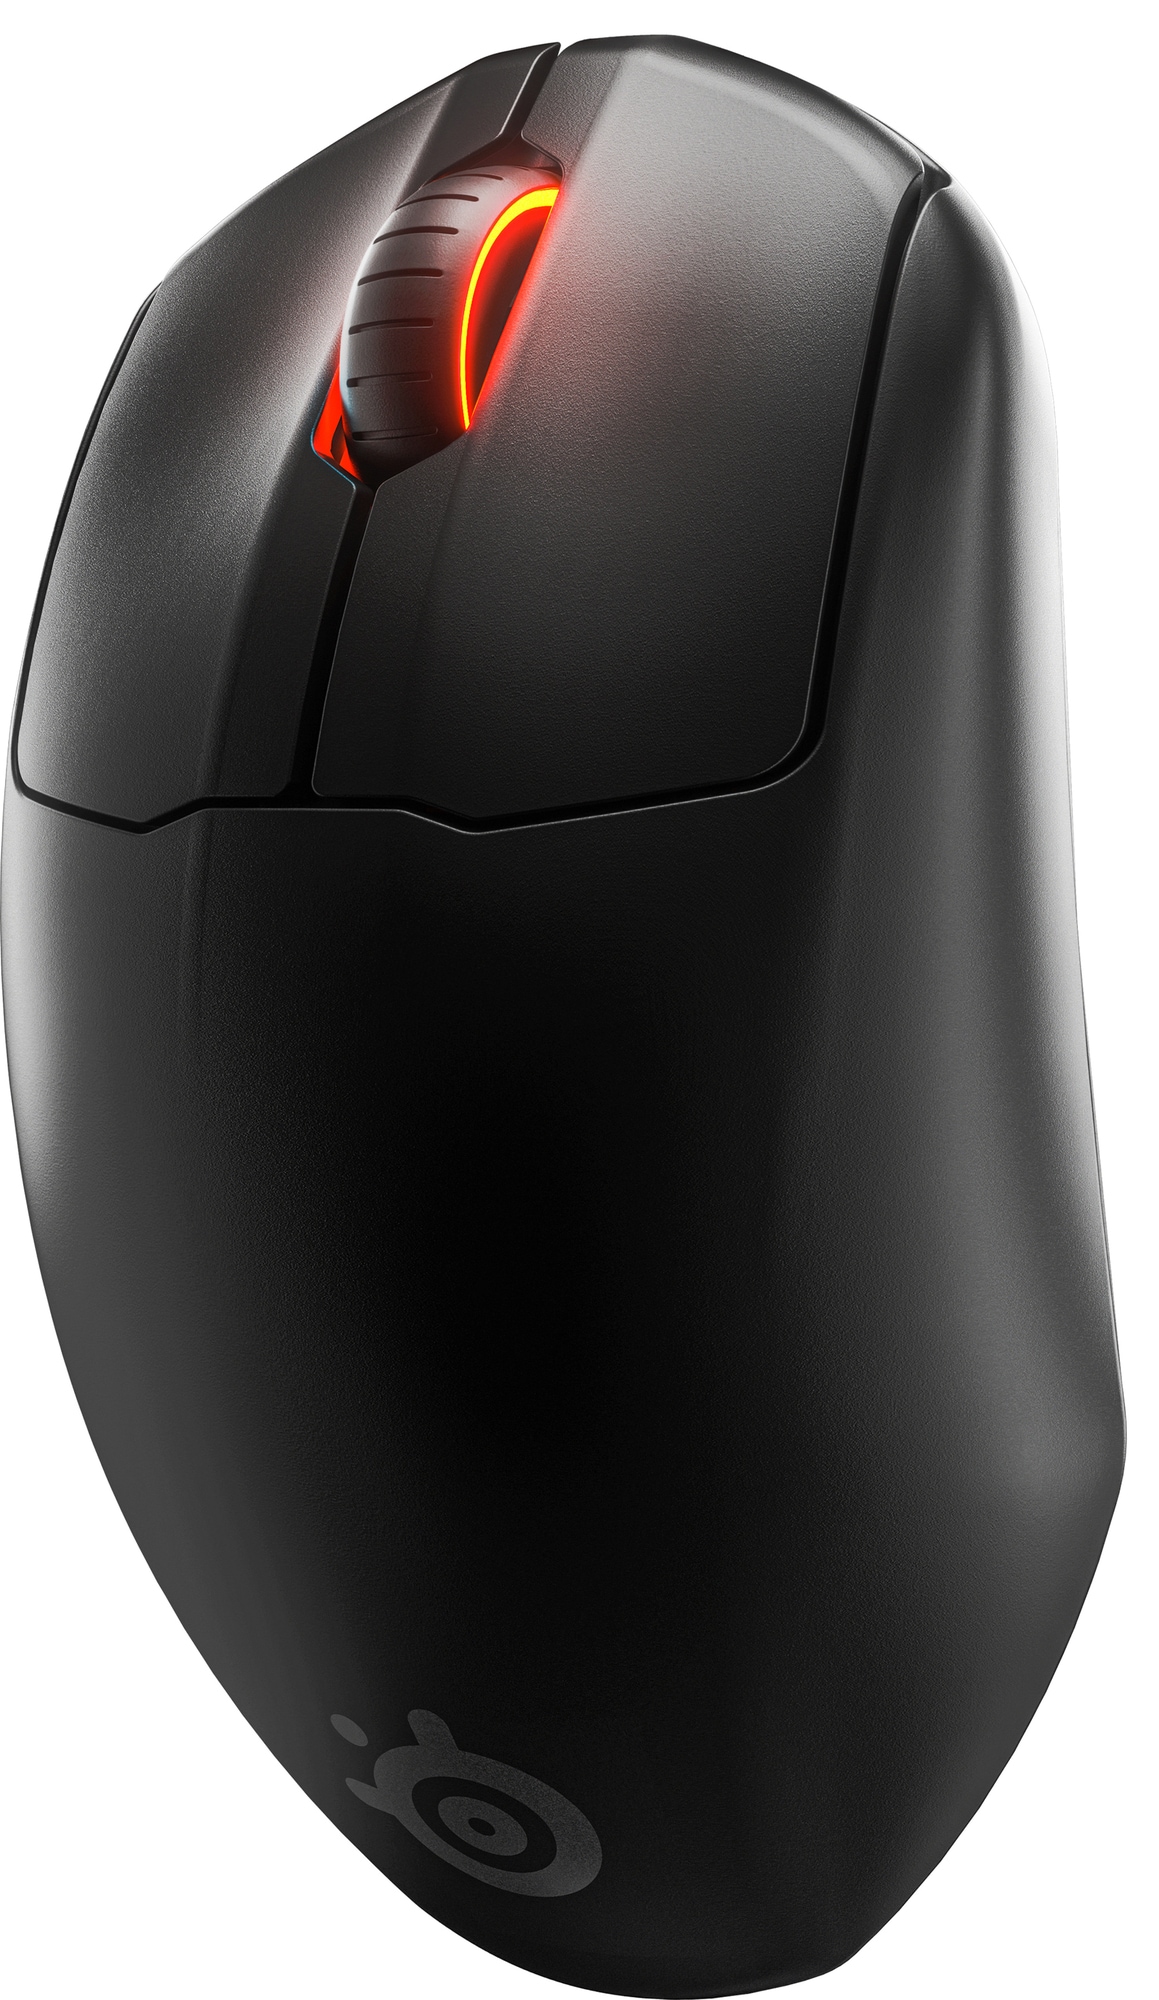 SteelSeries Prime trådløs gaming mus | Elgiganten